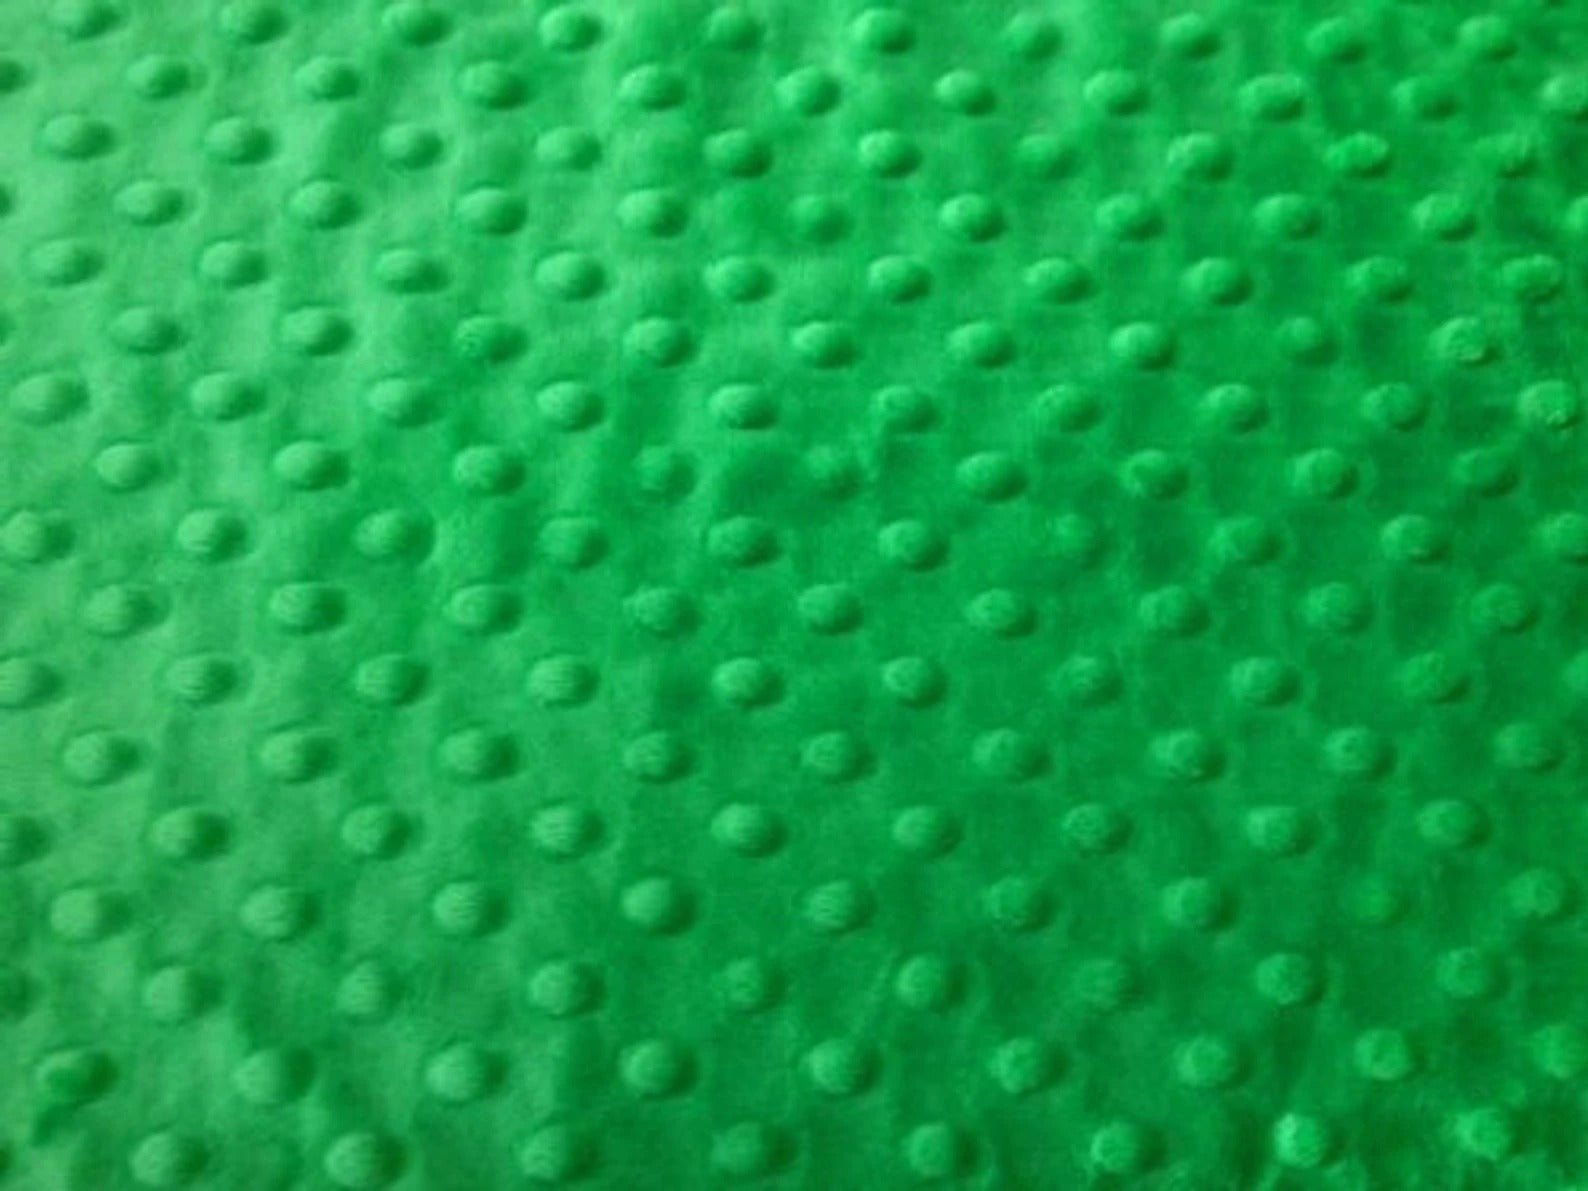 Bubble Polka Dot Minky Fabric By The Roll (20 Yards) Wholesale FabricMinkyICEFABRICICE FABRICSKelly GreenBy The Roll (60" Wide)Bubble Polka Dot Minky Fabric By The Roll (20 Yards) Wholesale Fabric ICEFABRIC Kelly Green